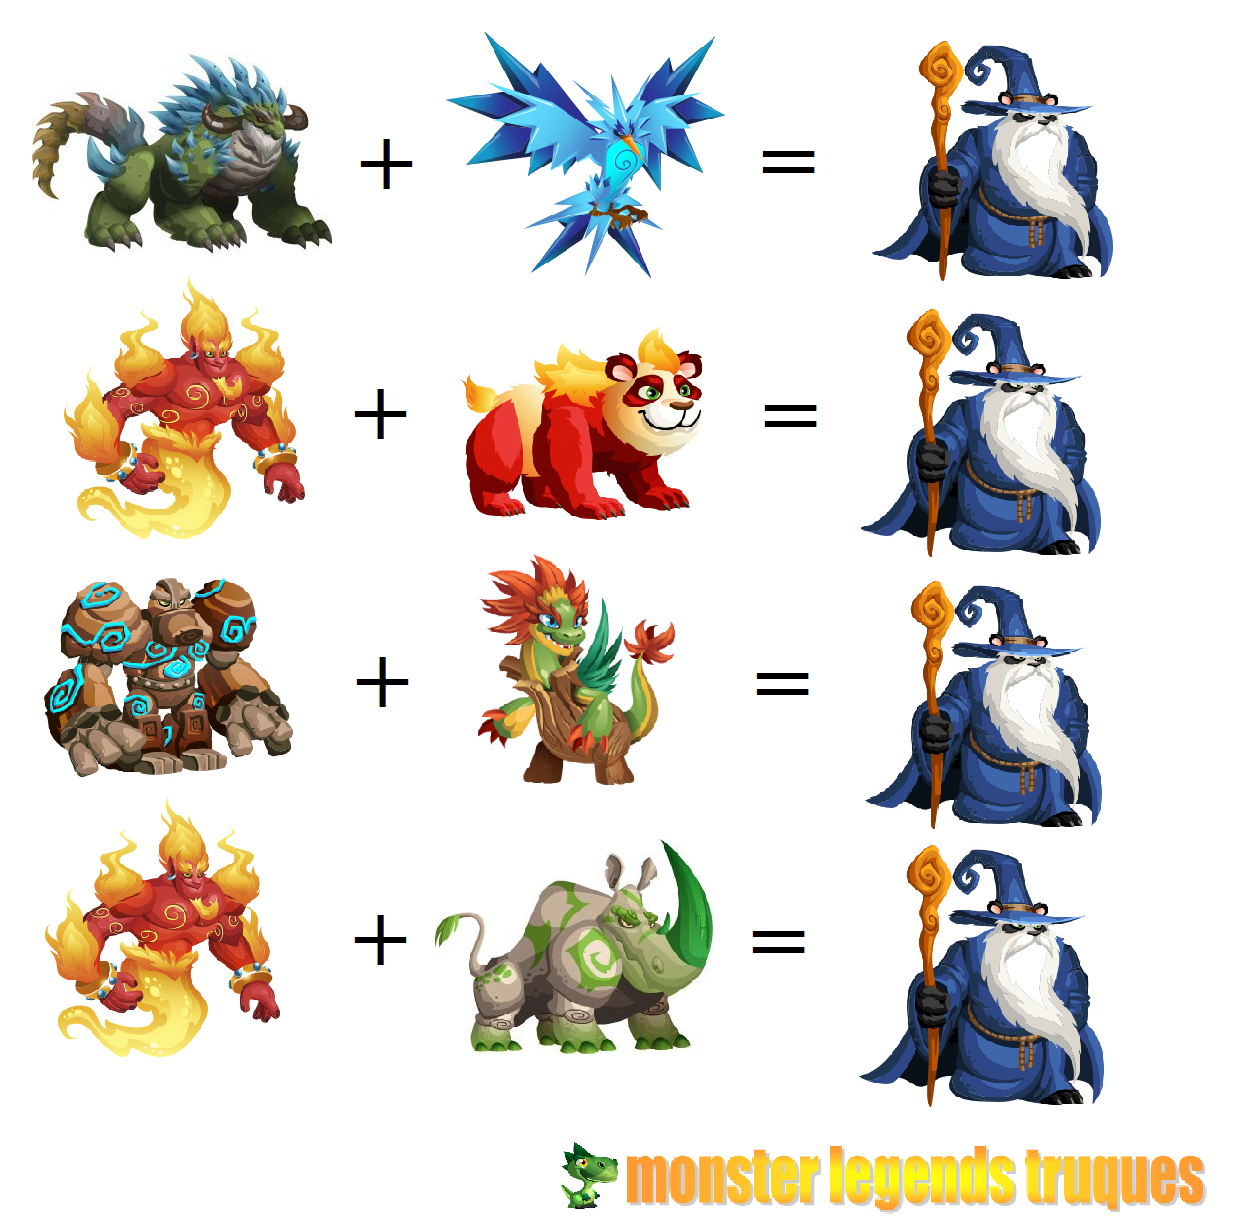 Mythic breeding monster legends